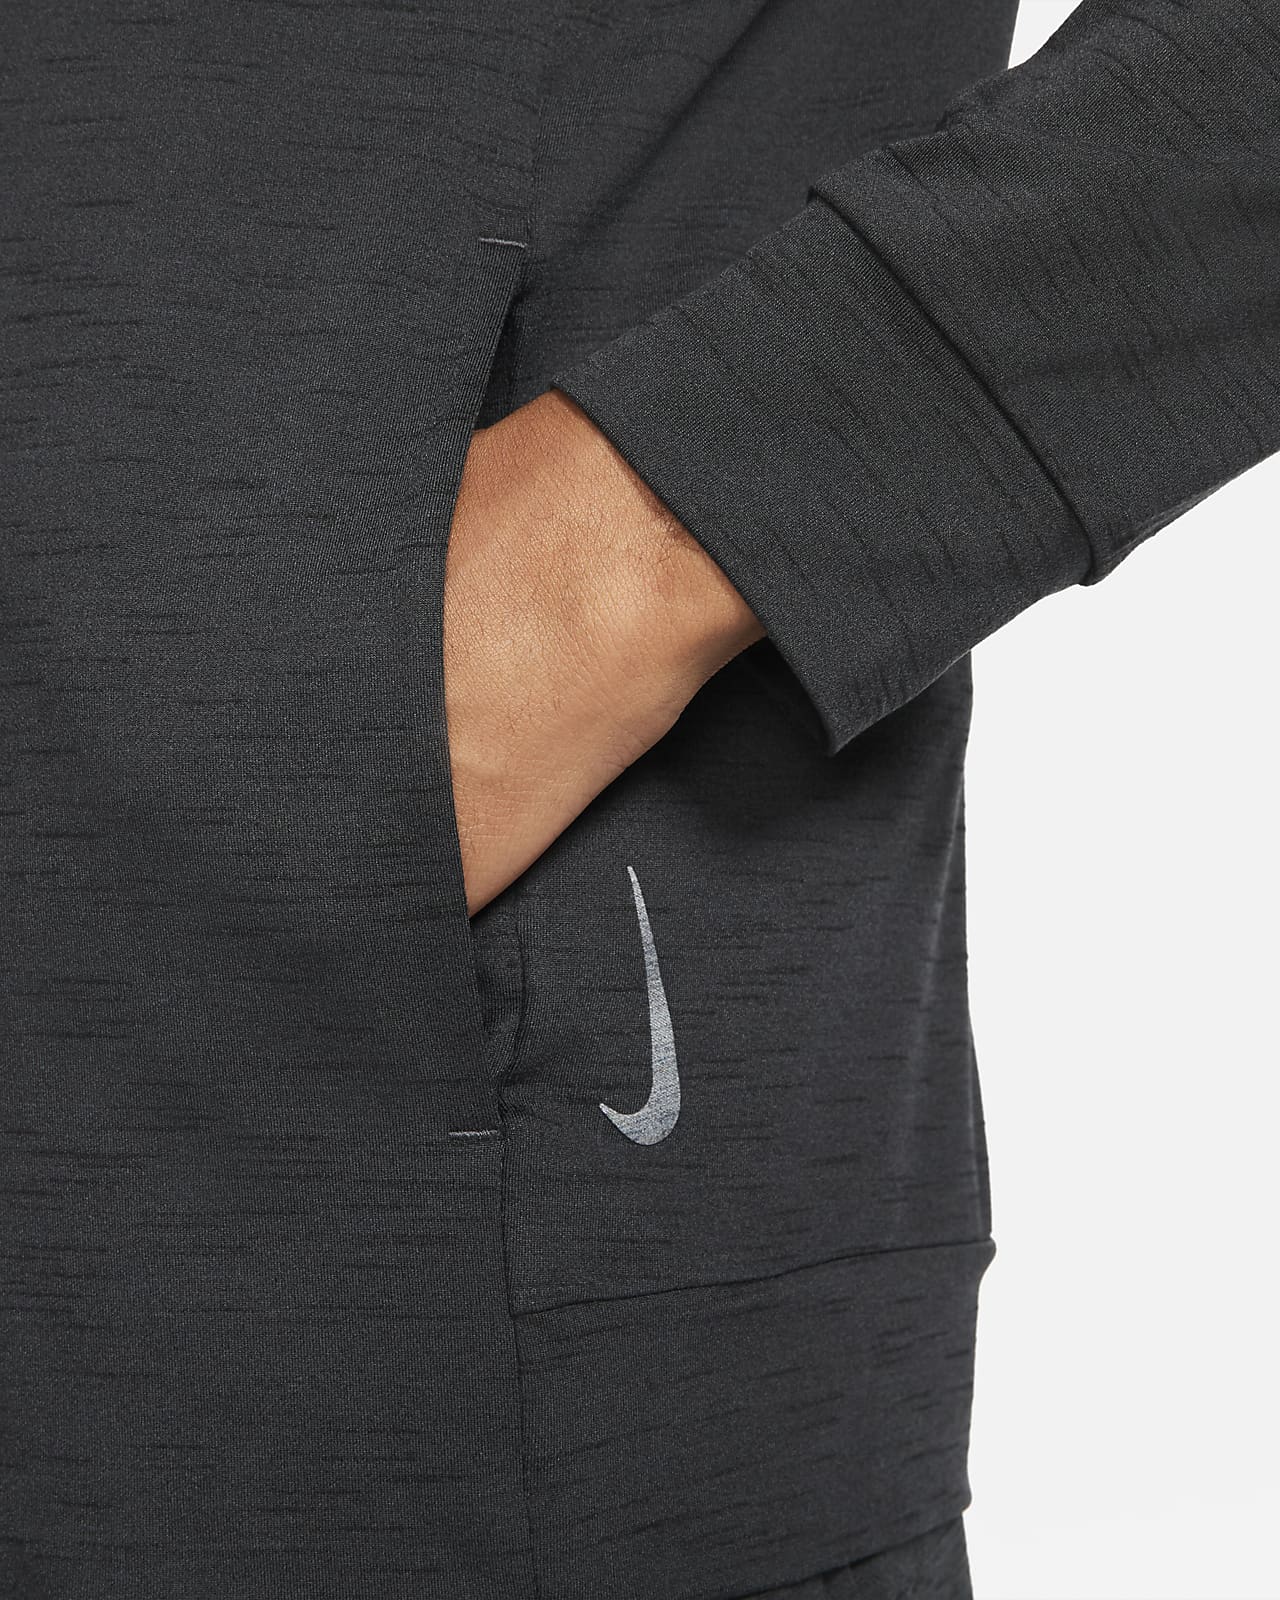 Nike Yoga Dri-FIT Men's Full-Zip Jersey Hoodie.